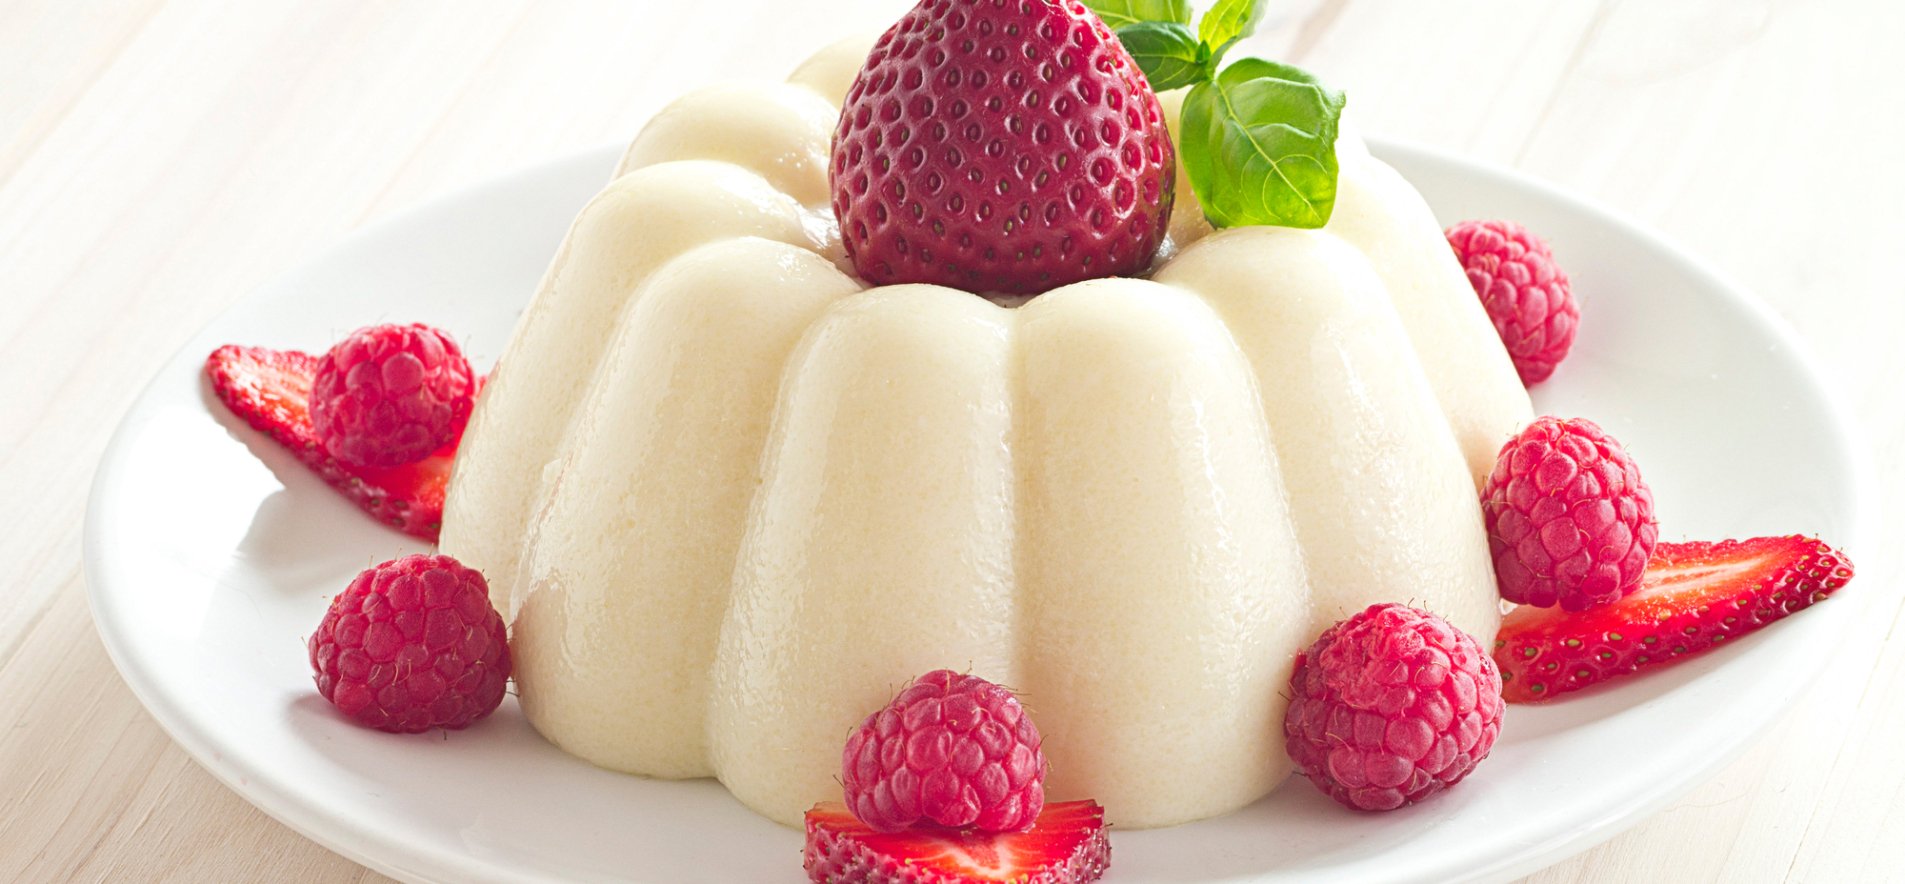 Ингредиенты для «Бланманже из йогурта с клубникой»: